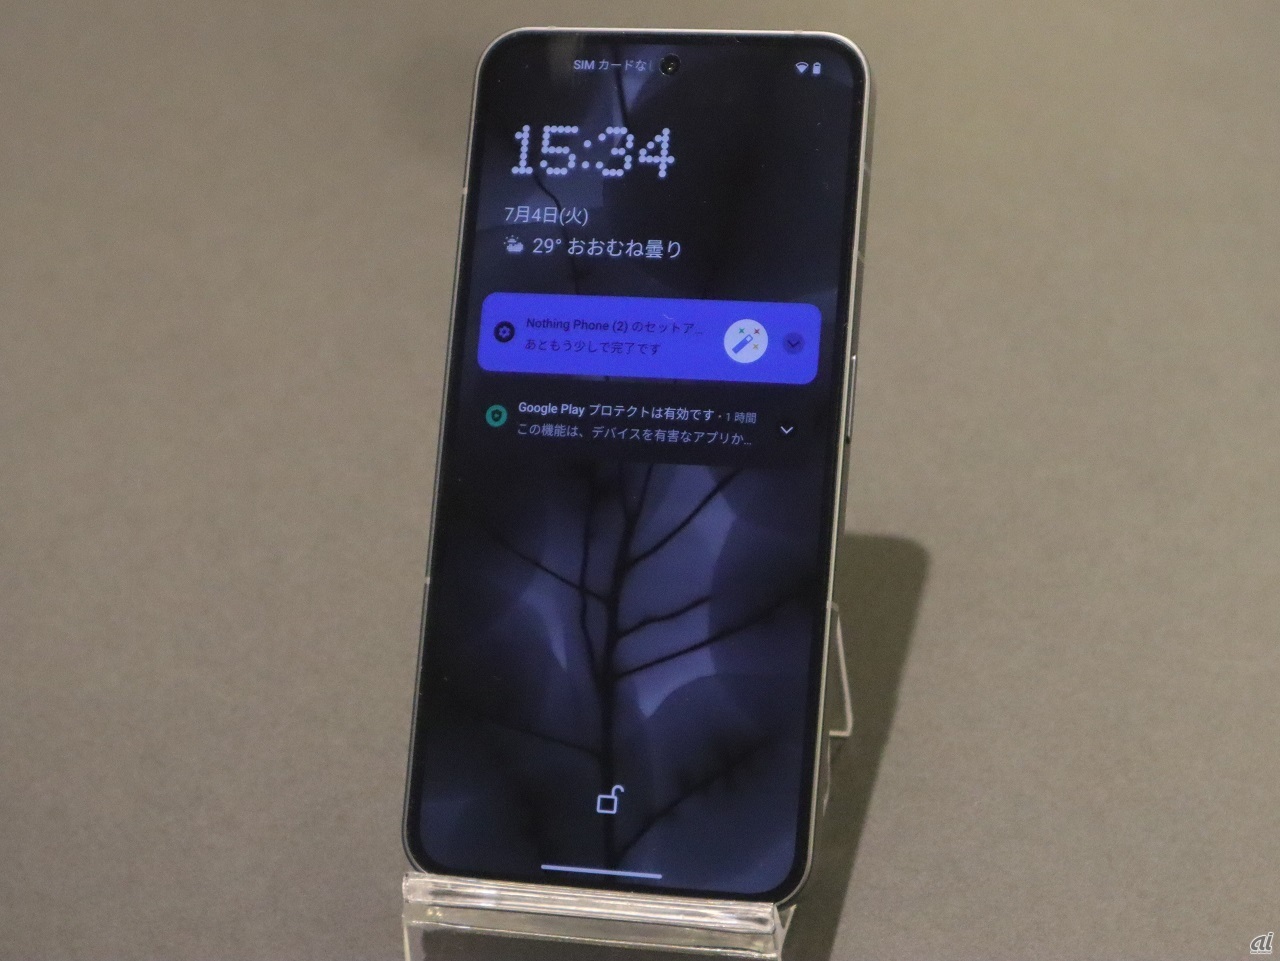 時計がNothing Phoneの特徴の1つとなるドットフォントで表示されている